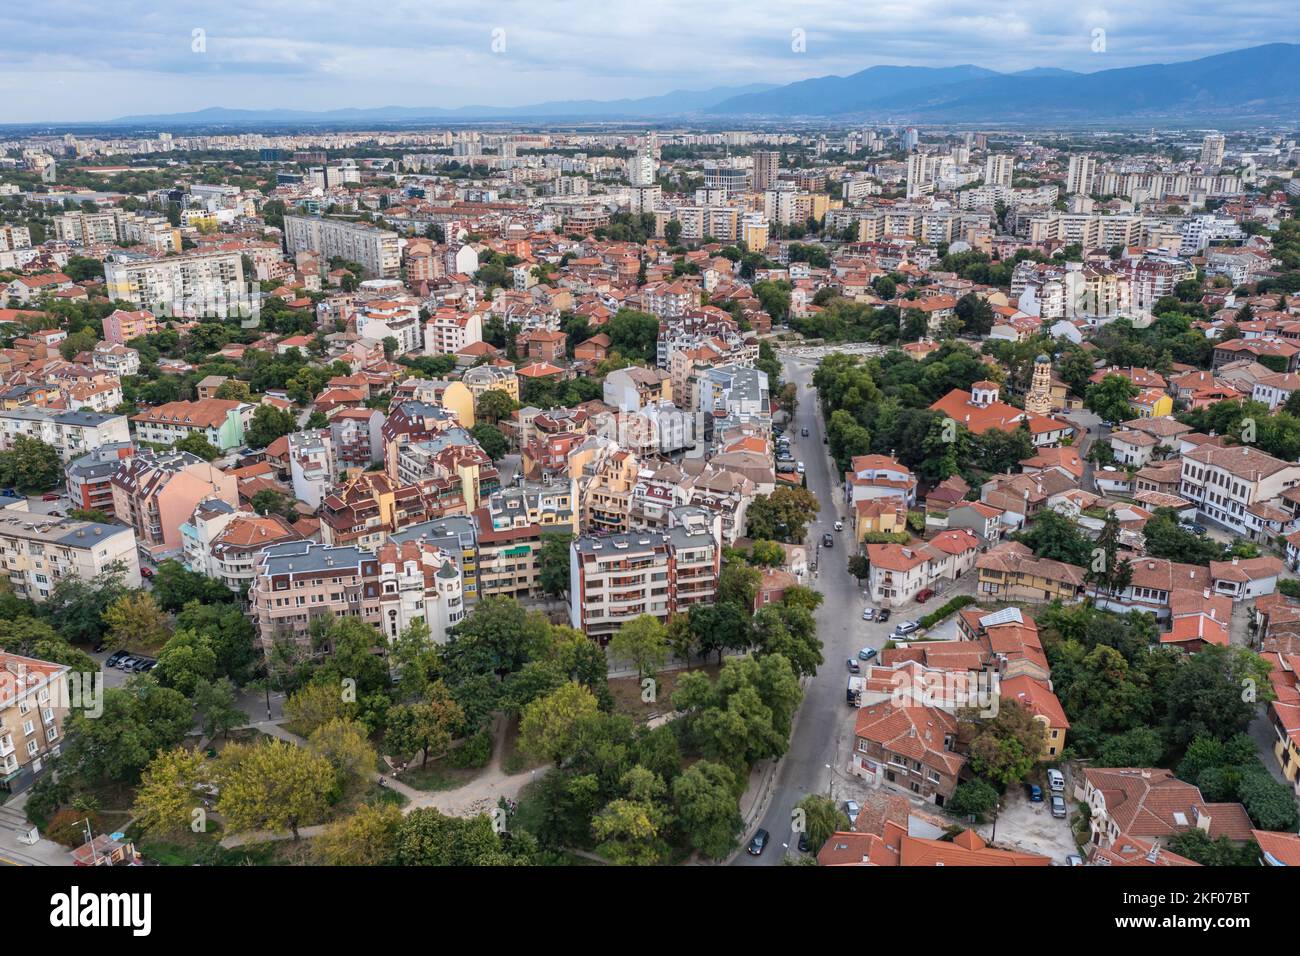 La ciudad de Plovdiv, capital de la provincia de Plovdiv, en el centro sur de Bulgaria, vista desde la colina de Nebet Tepe Foto de stock